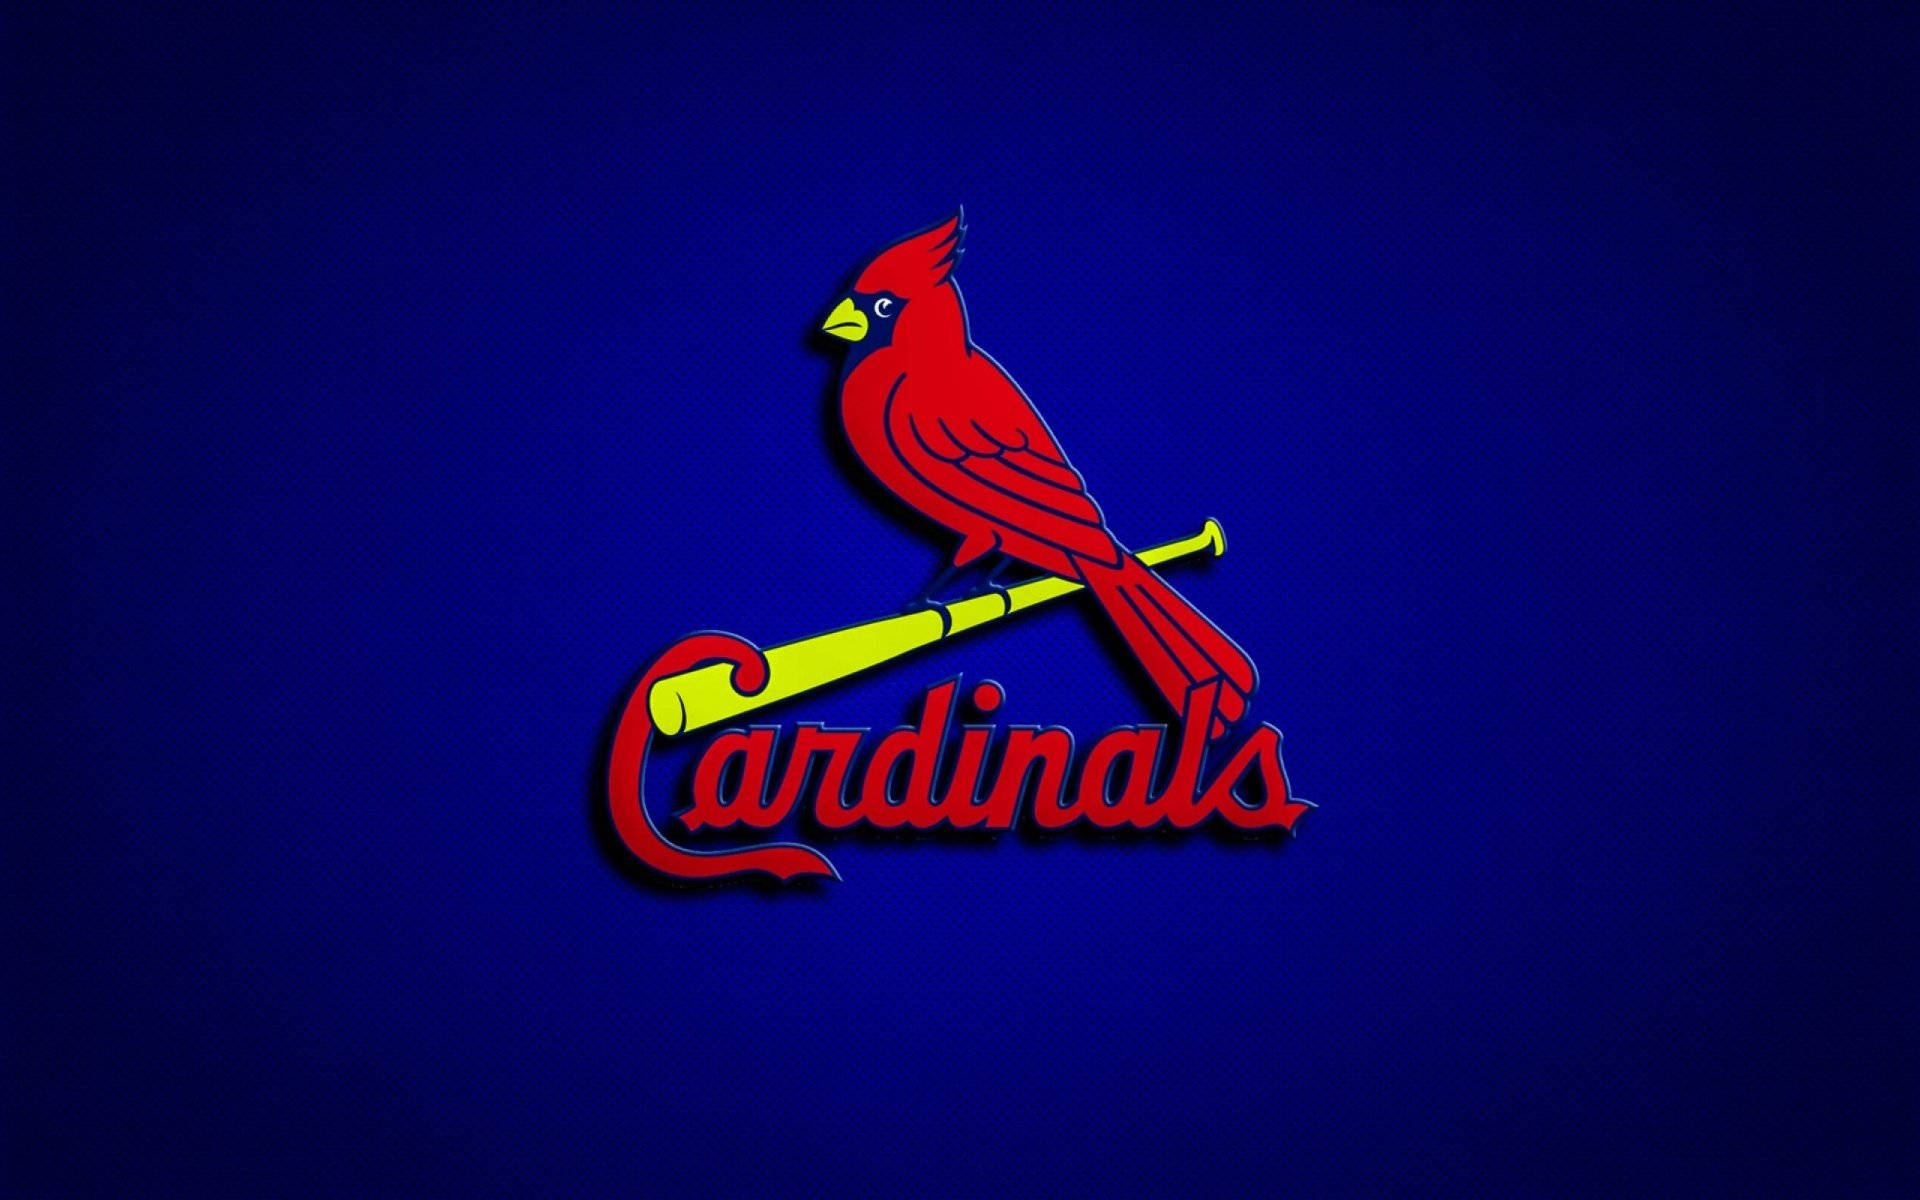 St Louis Cardinals Red Bird Emblem